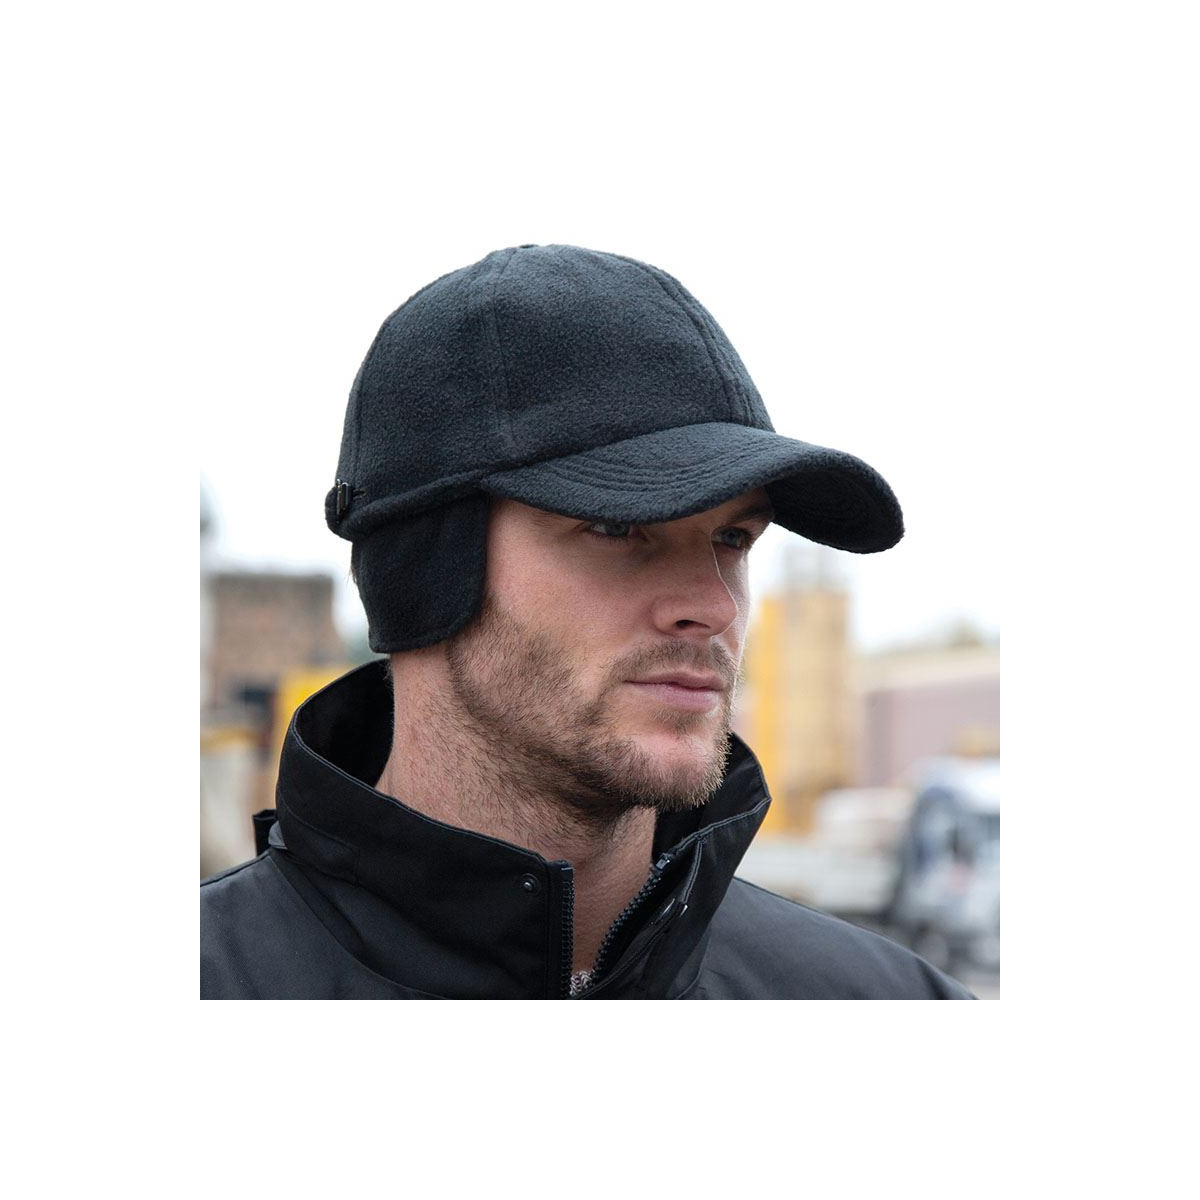 Casquette Hiver Homme - acheter casquette homme pas cher pour l'hiver